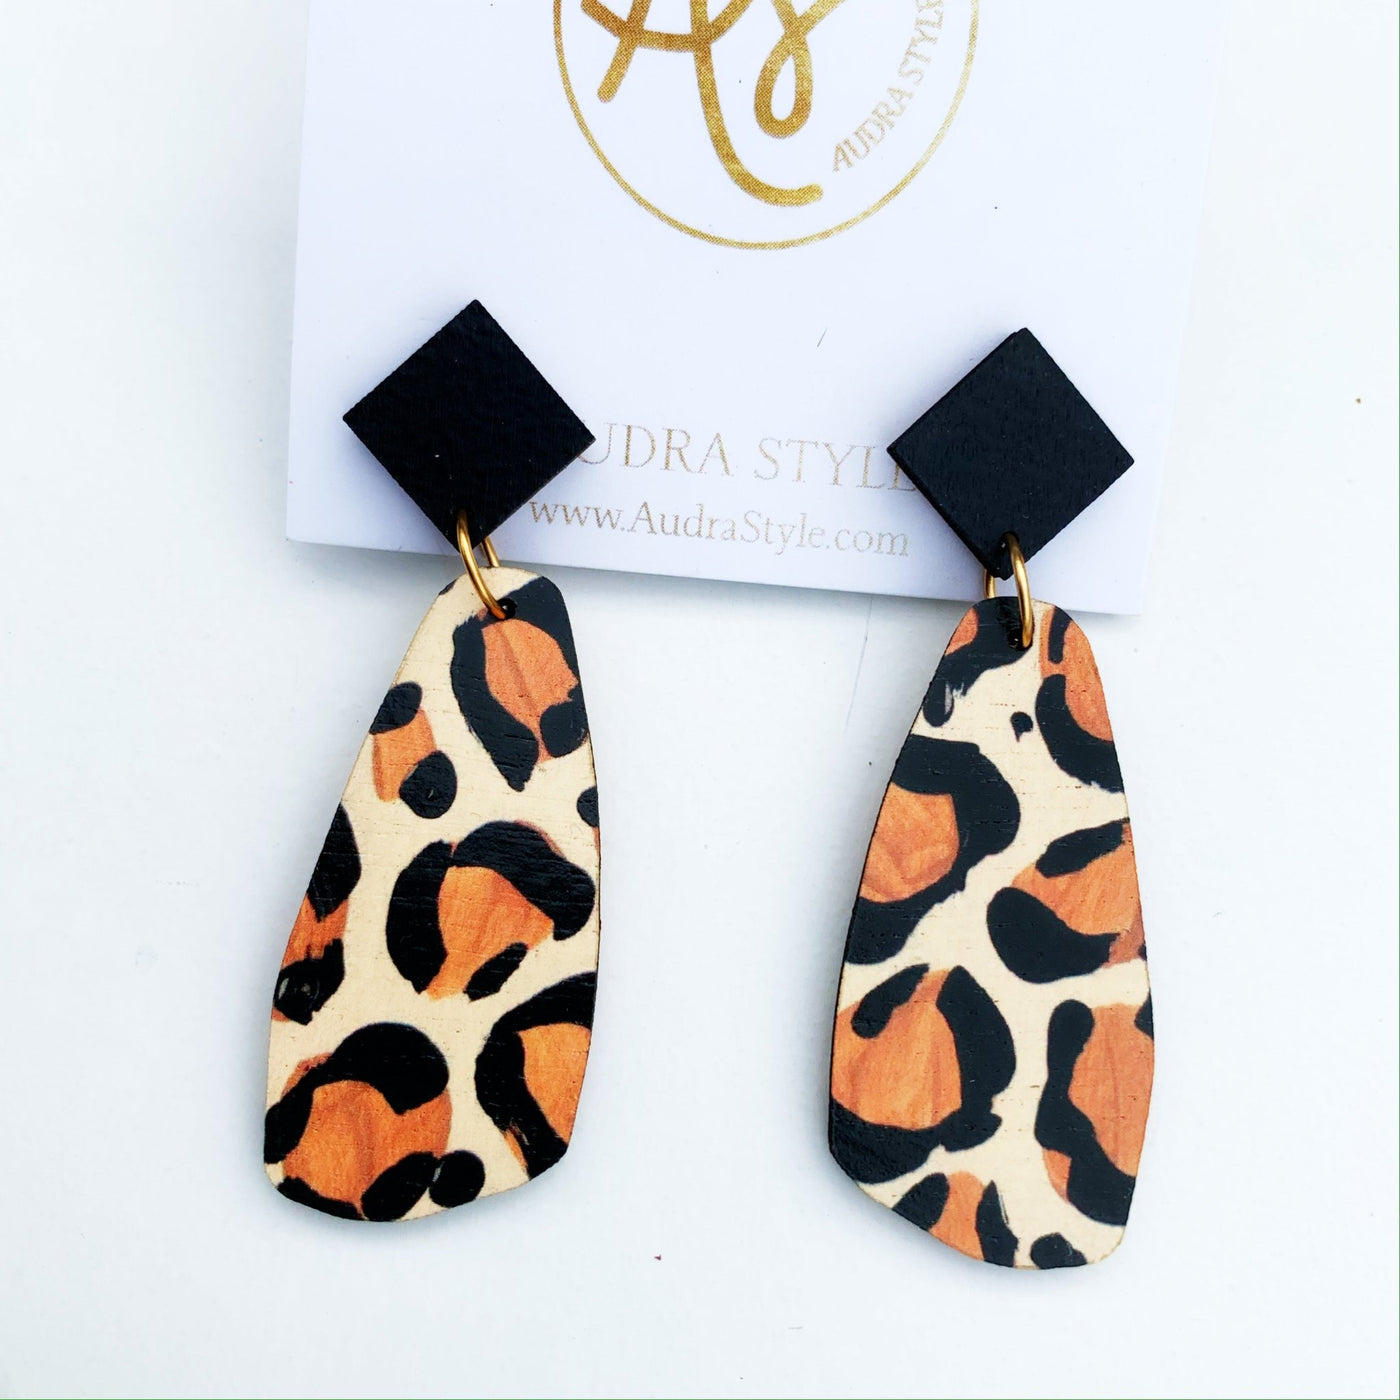 The OG Earrings - Leopard